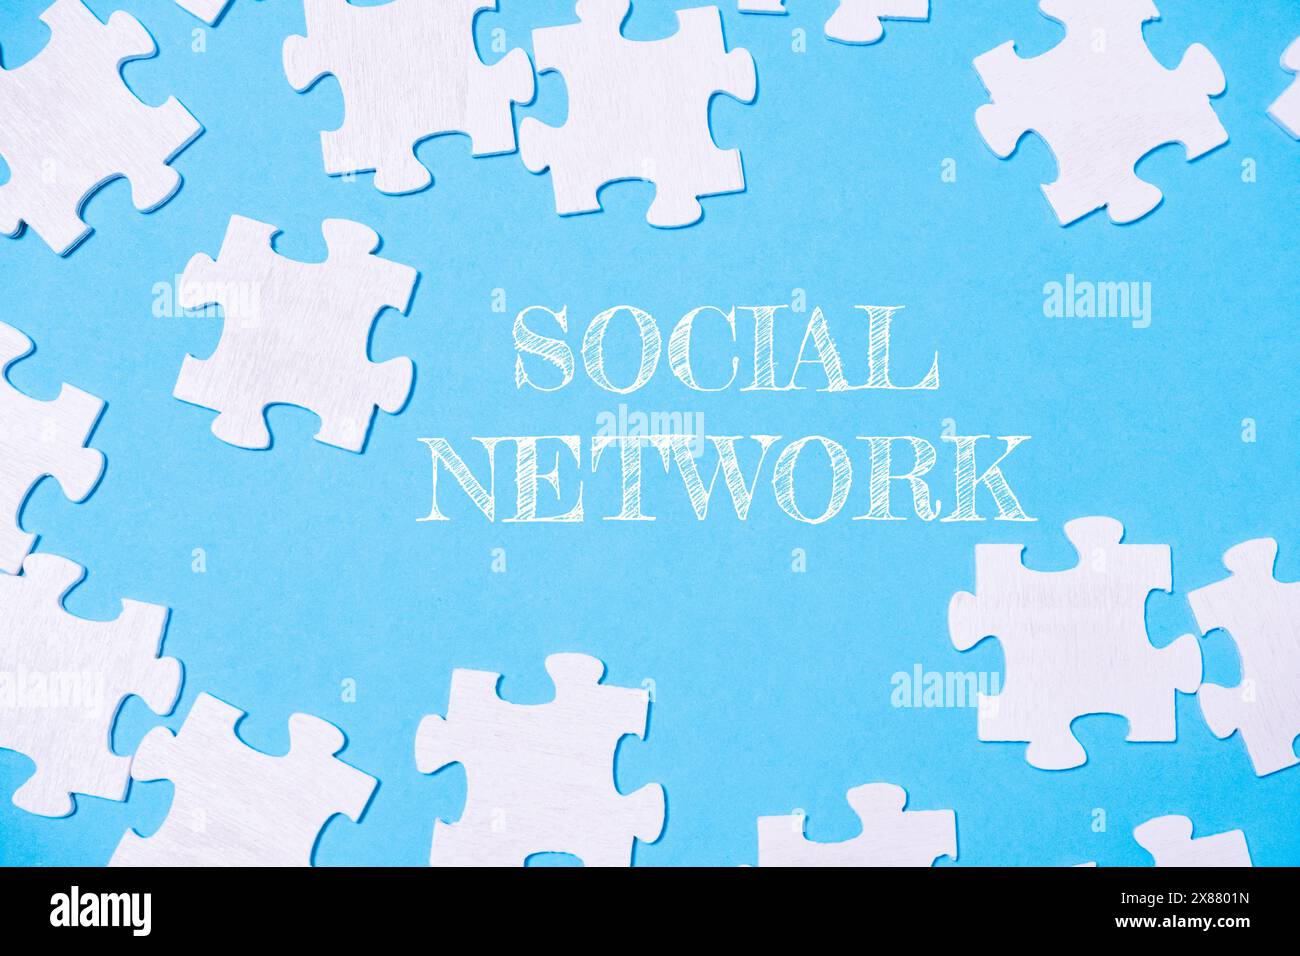 Un puzzle con la parola social network scritta sopra. I pezzi del puzzle sono sparsi nell'immagine, creando un senso di disordine e complessità Foto Stock